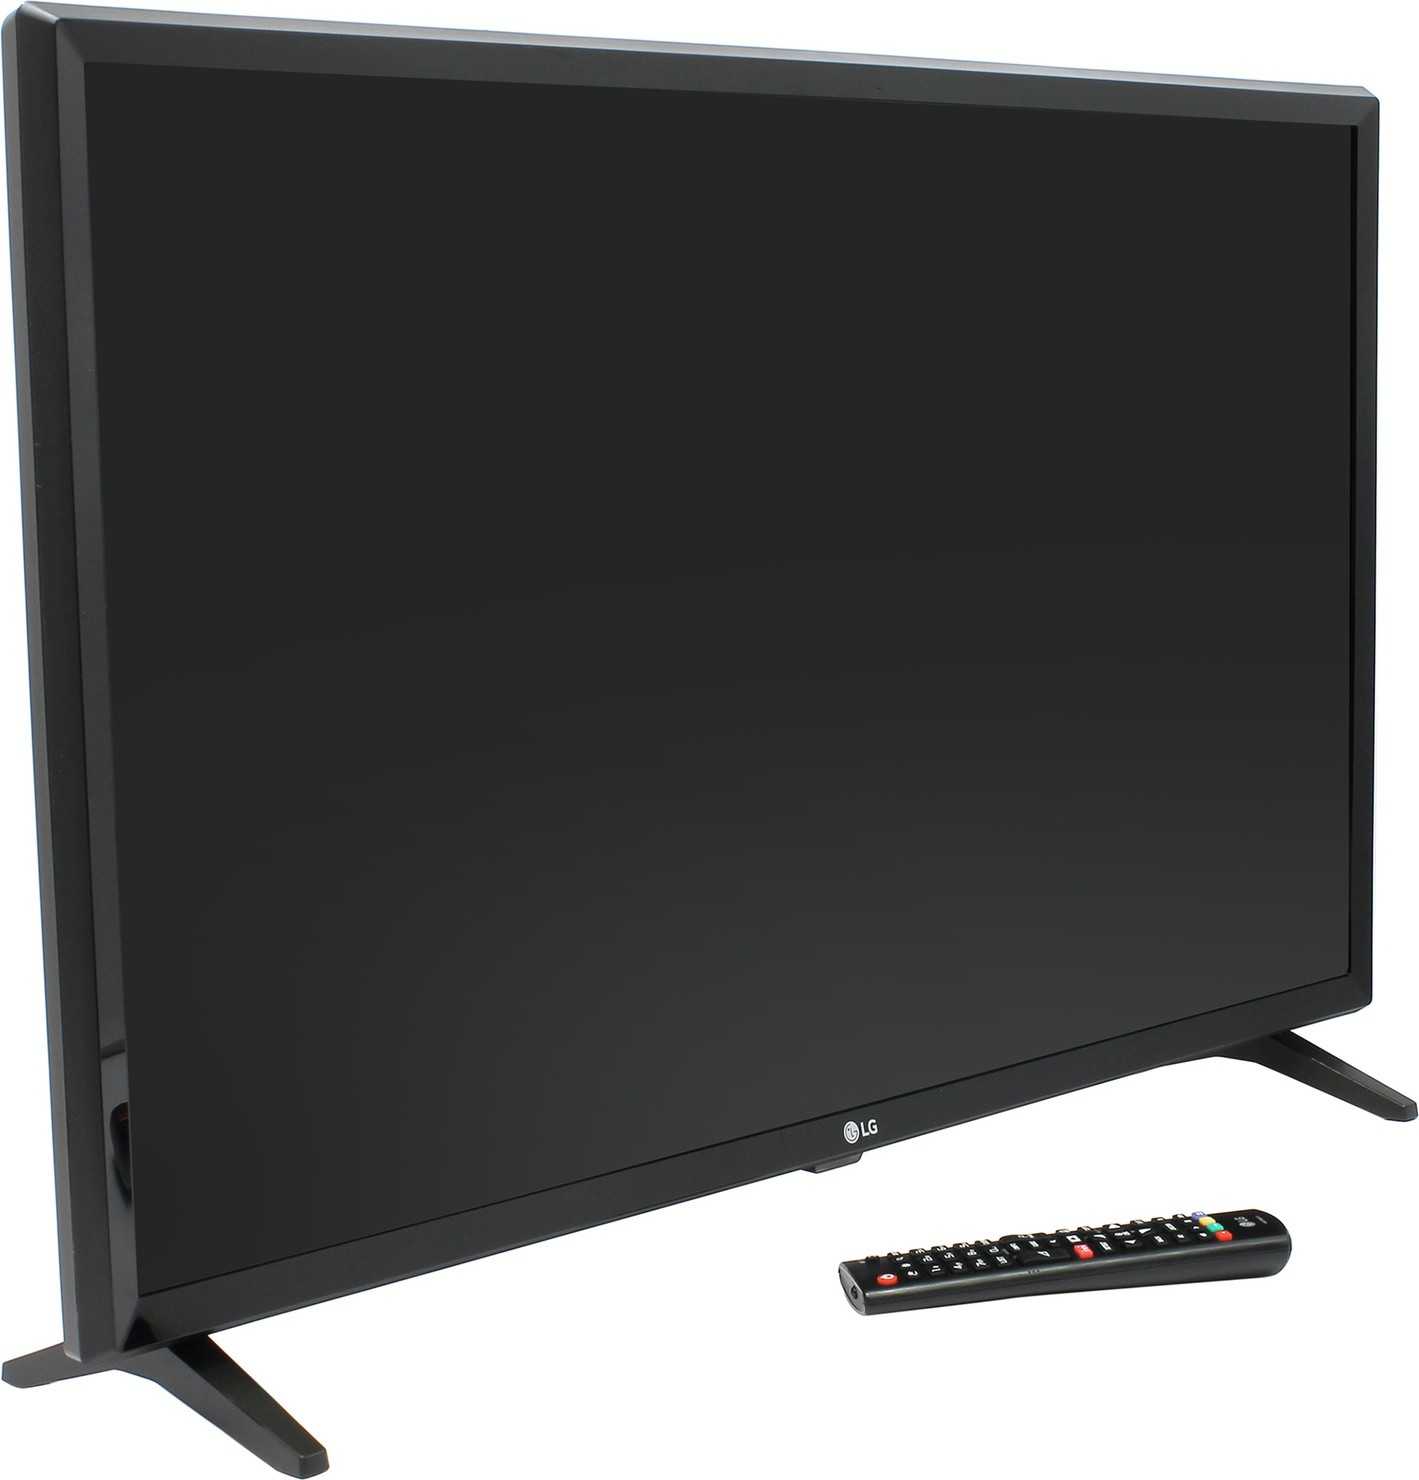 Lg 32lj610v (черный) - купить , скидки, цена, отзывы, обзор, характеристики - телевизоры